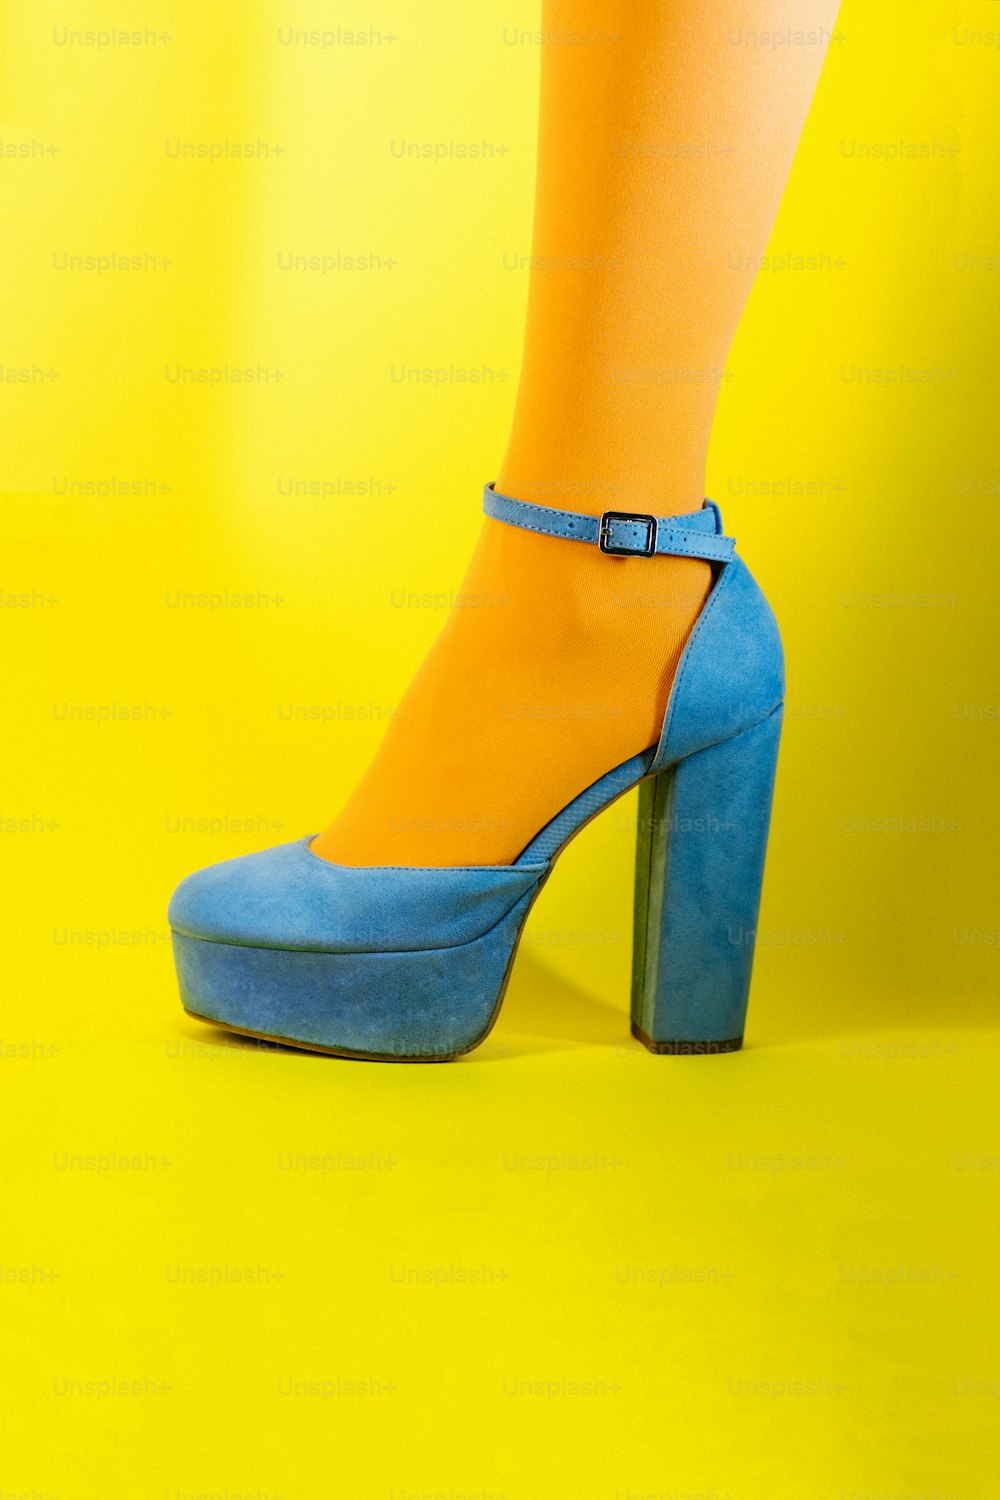 Die Beine einer Frau tragen blaue und gelbe High Heels